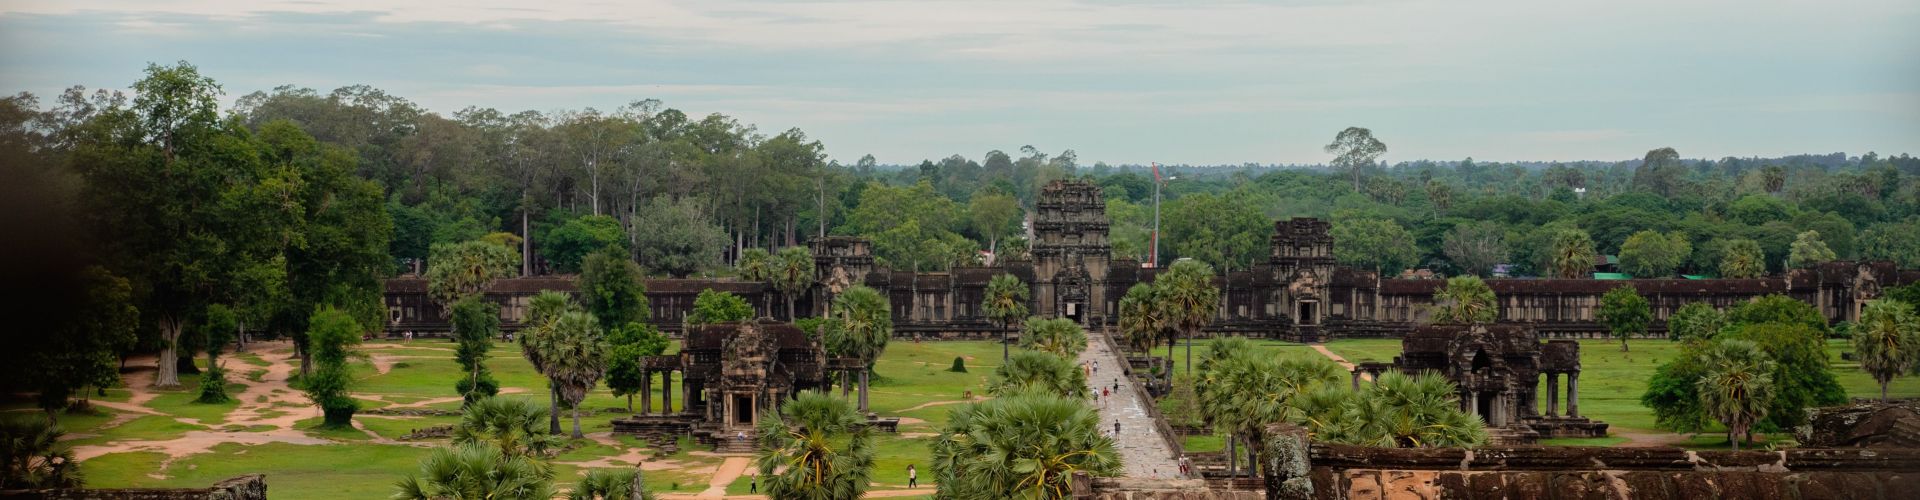 Destinations in Cambodia